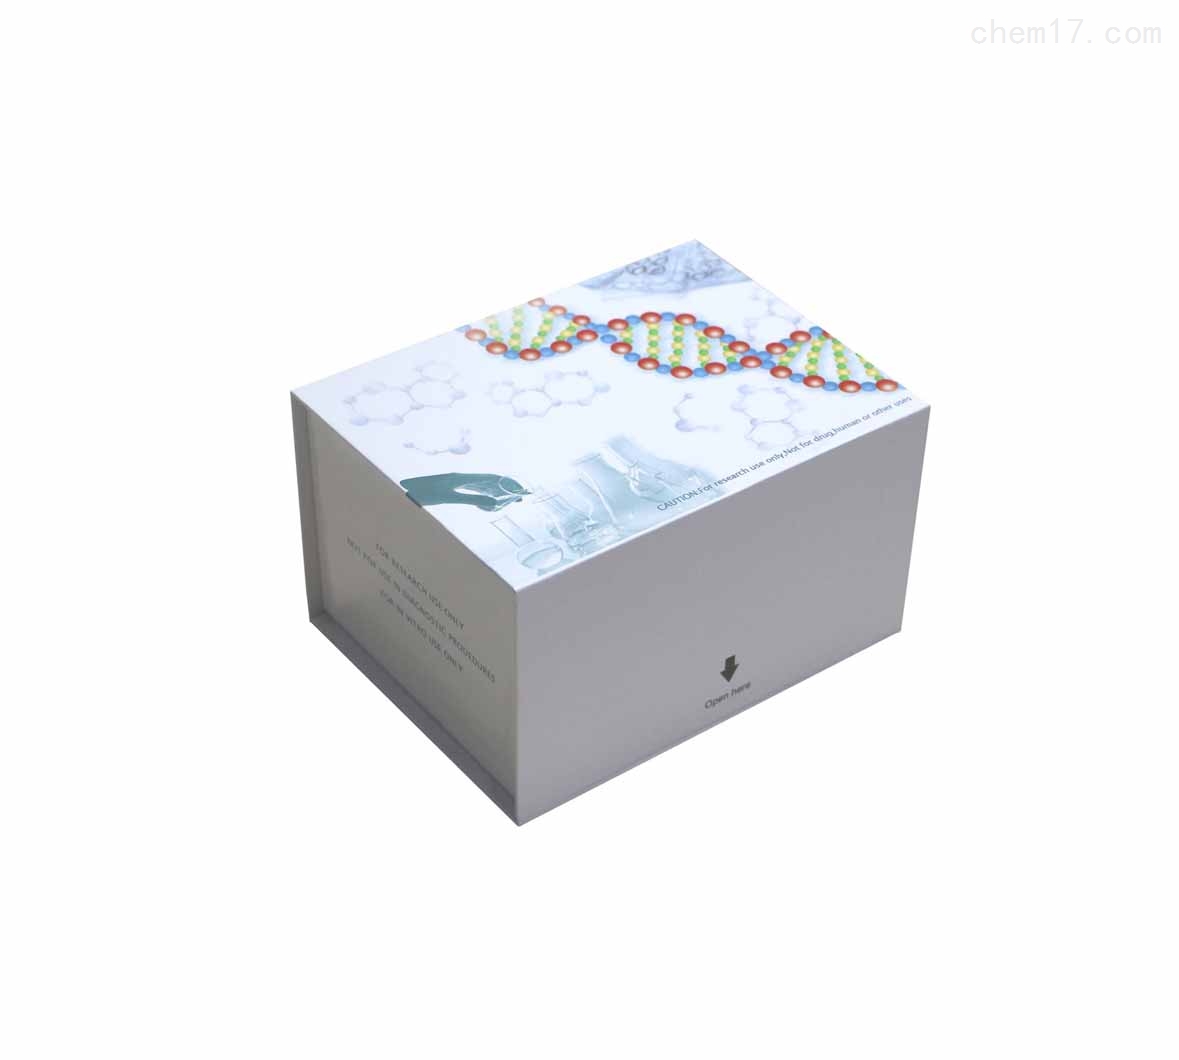 人膜联蛋白Ⅱ(ANXⅡ)ELISA试剂盒